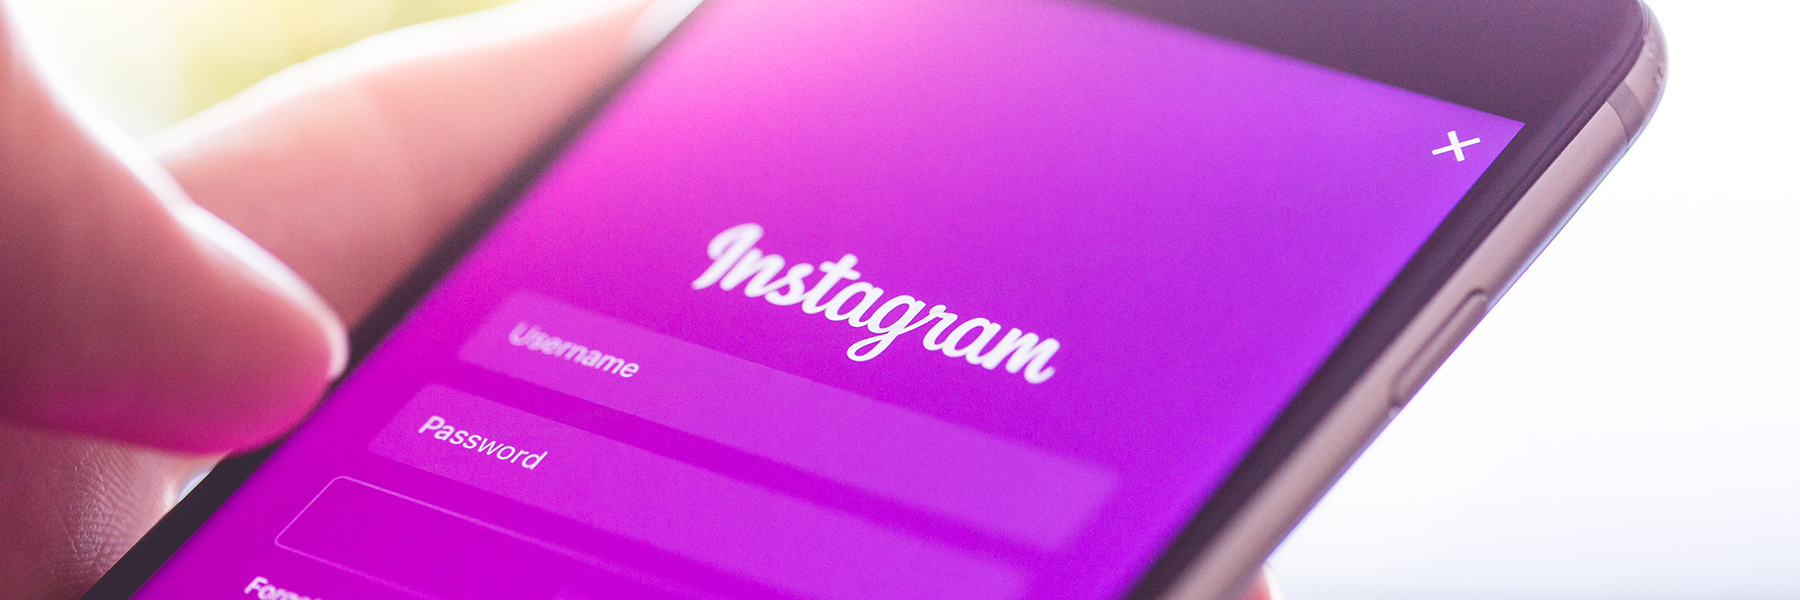 Como postar fotos no Instagram sem usar o app